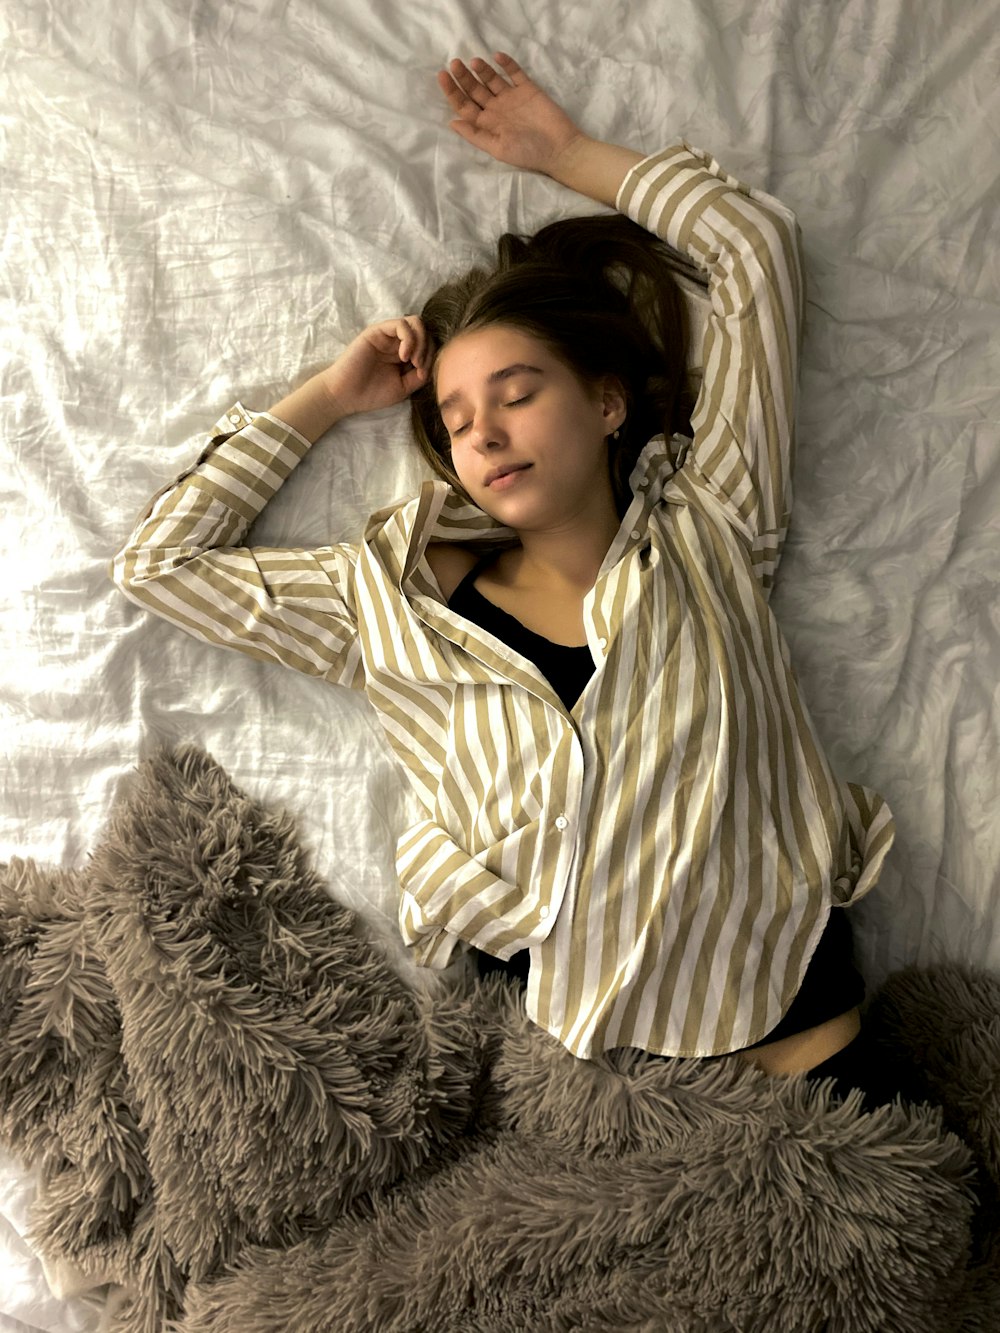 Mujer con camisa de manga larga a rayas blancas y negras acostada en la cama